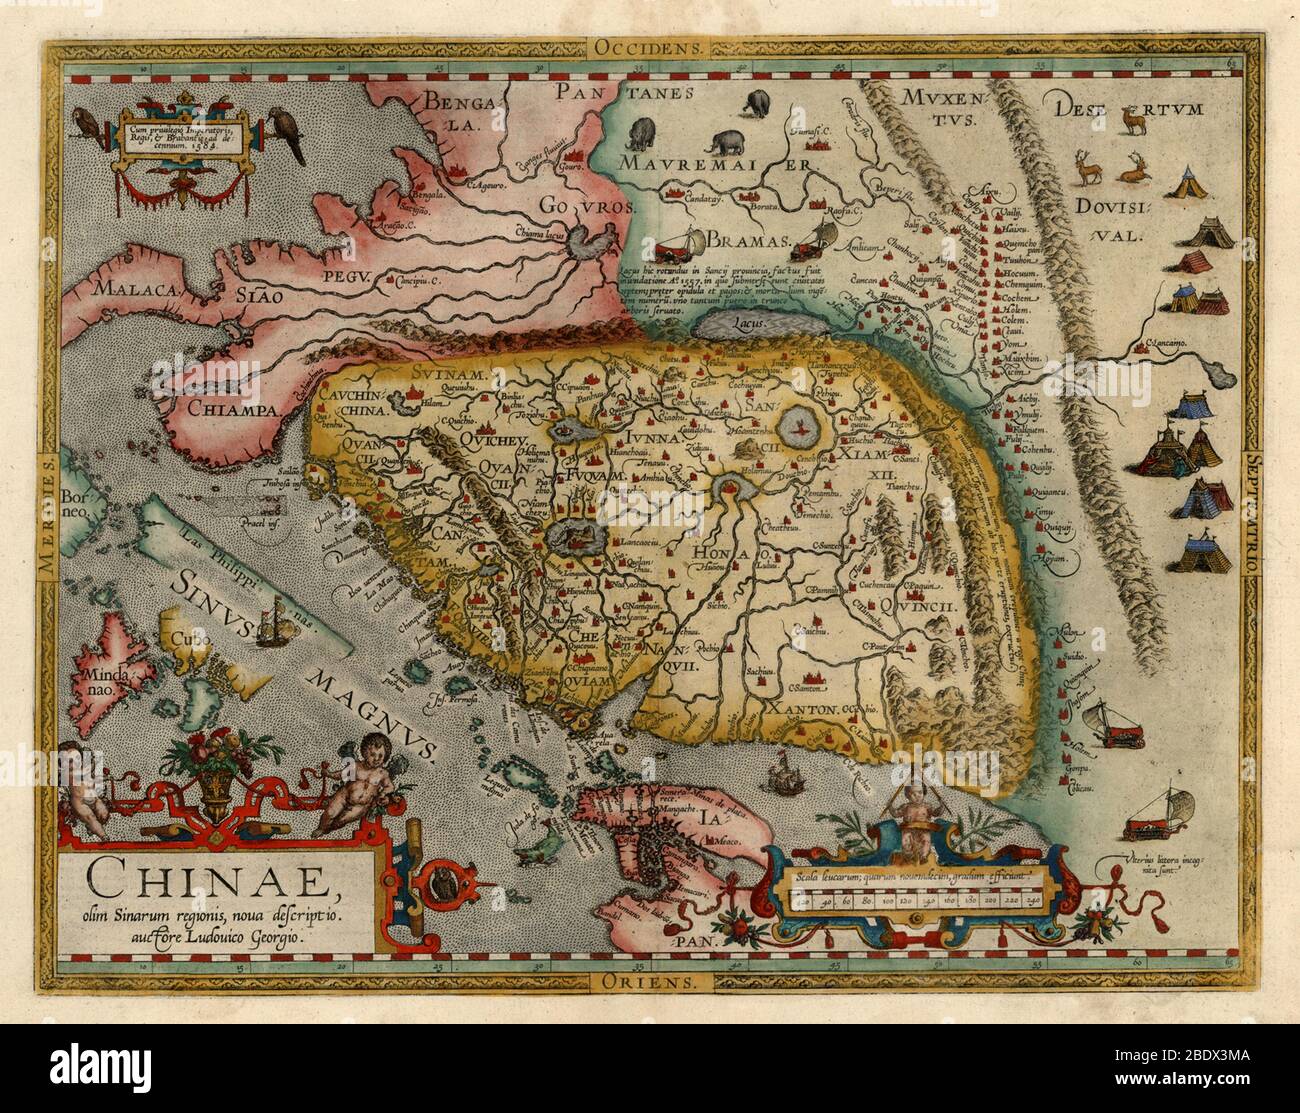 Luiz Jorge de Barbuda, Mappa della Cina, 1584 Foto Stock